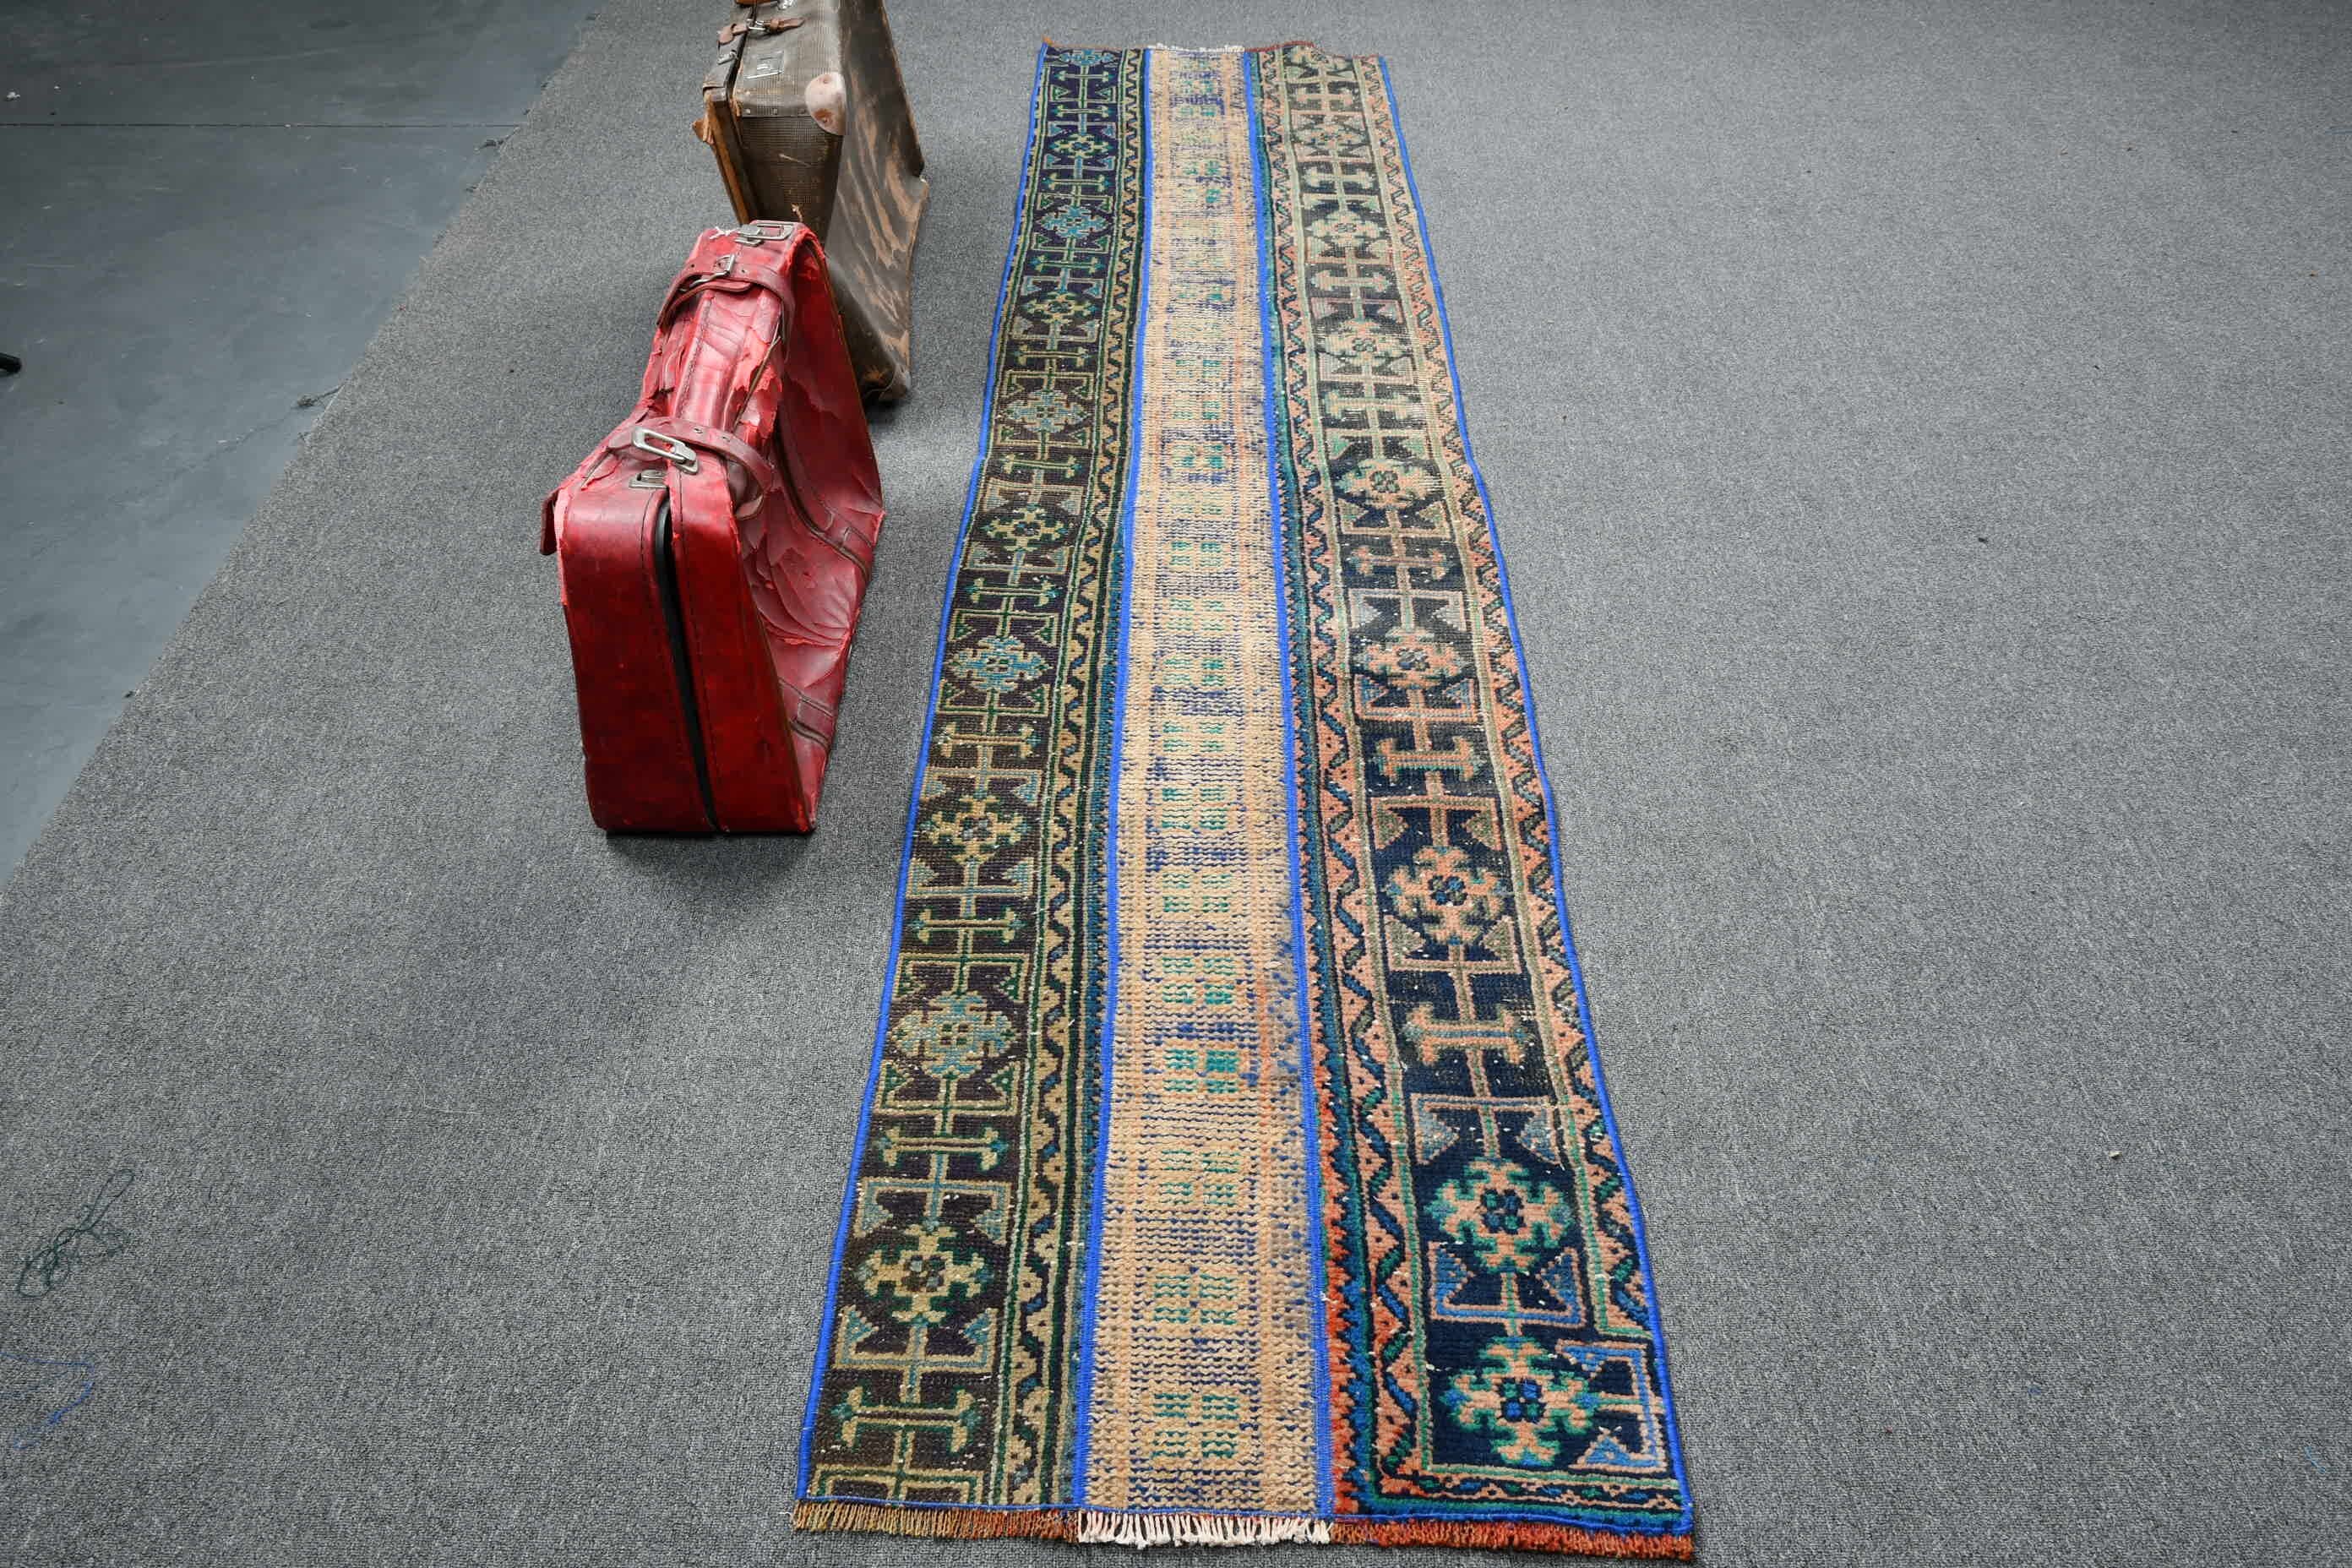 Vintage Rug, Turkish Rug, Moroccan Rug, Blue Floor Rug, Handwoven Rugs, 2.2x9.7 ft Runner Rugs, Corridor Rugs, Rugs for Stair